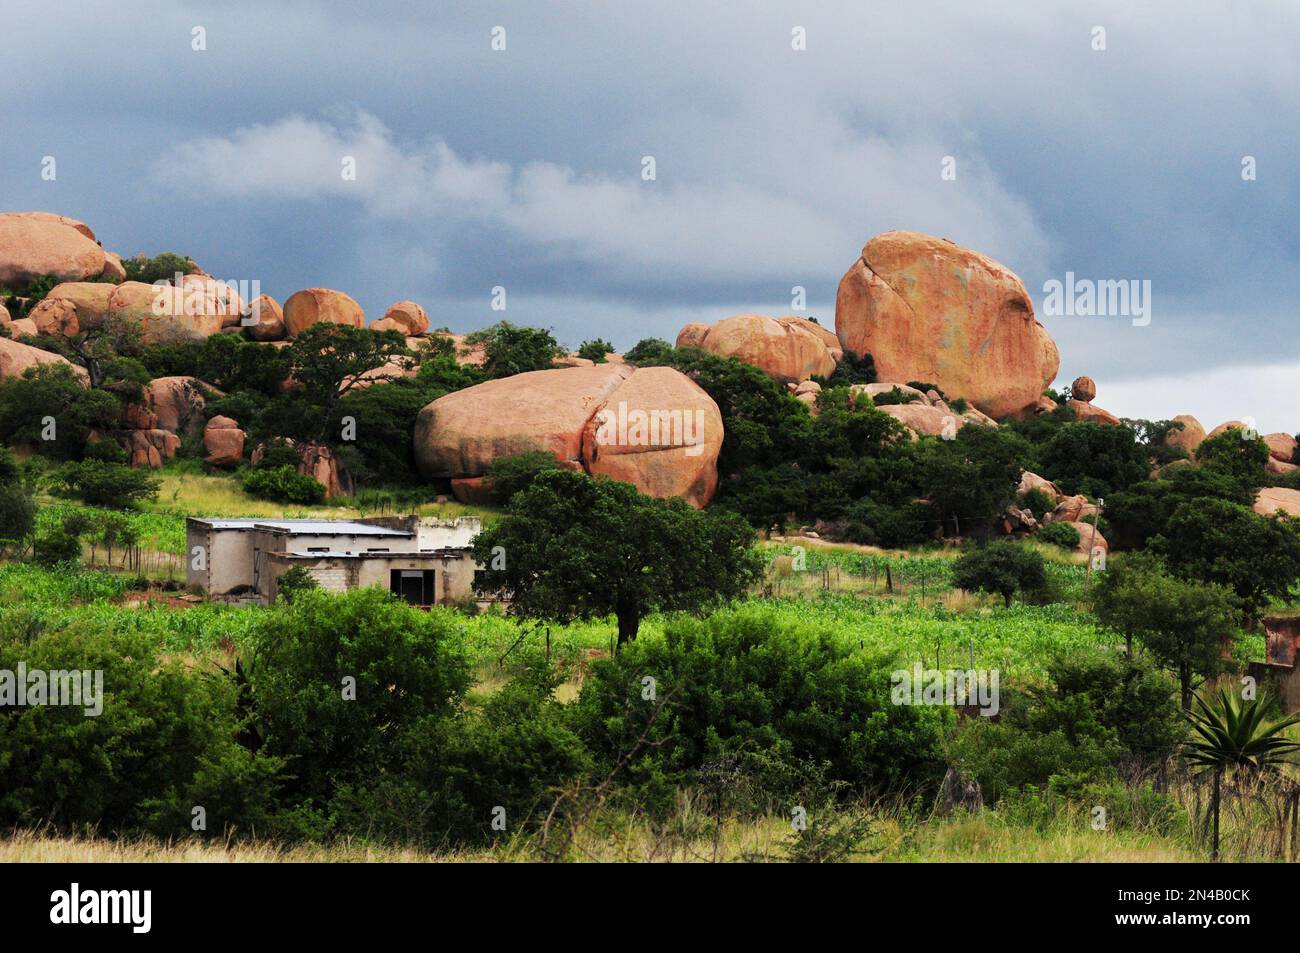 Le village de Mashashane à Limpopo est caractéristique de belles formations rocheuses que les dieux auraient soigneusement mises en place dans le passé Banque D'Images